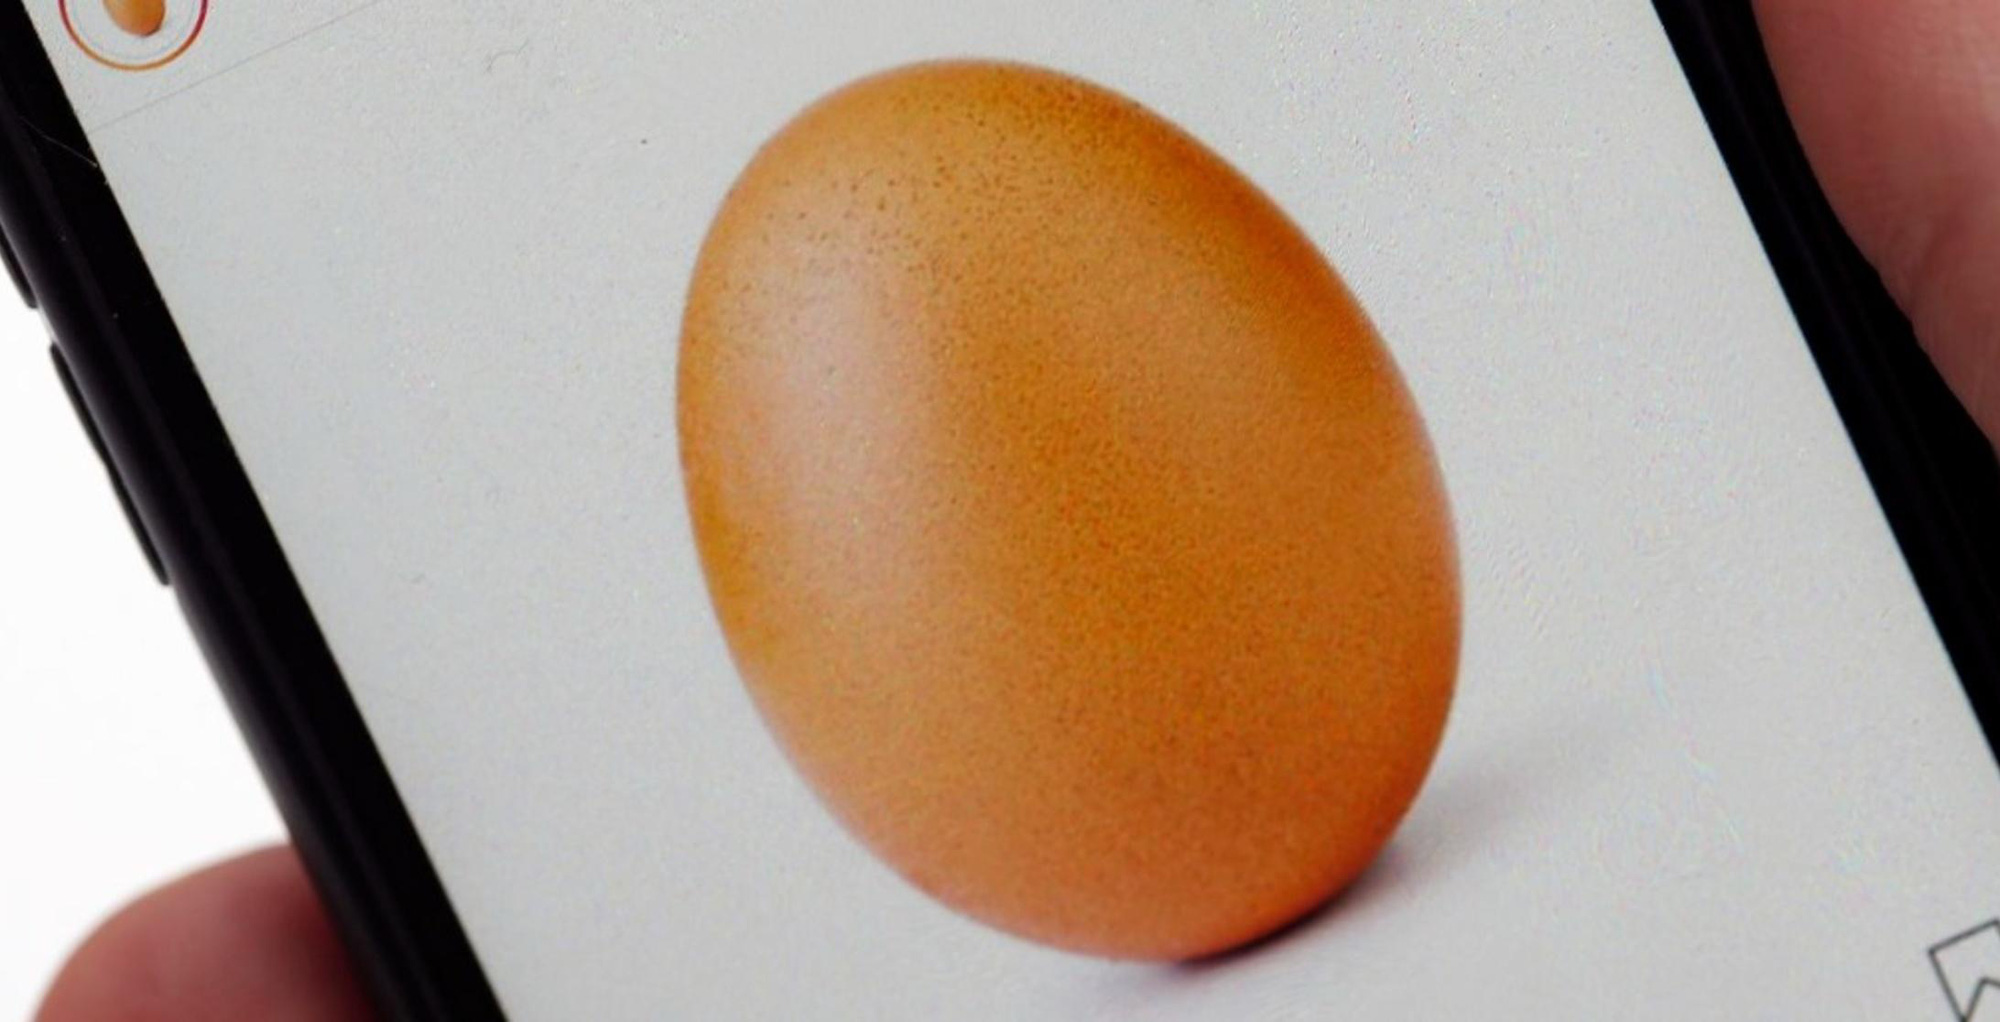 Chuyện thật như đùa: Bức ảnh chụp một quả trứng này dù đã được đăng tải 3 năm về trước nhưng vẫn là “quán quân” được ưu ái nhất trên Instagram với 55,5 triệu lượt thích - Ảnh 1